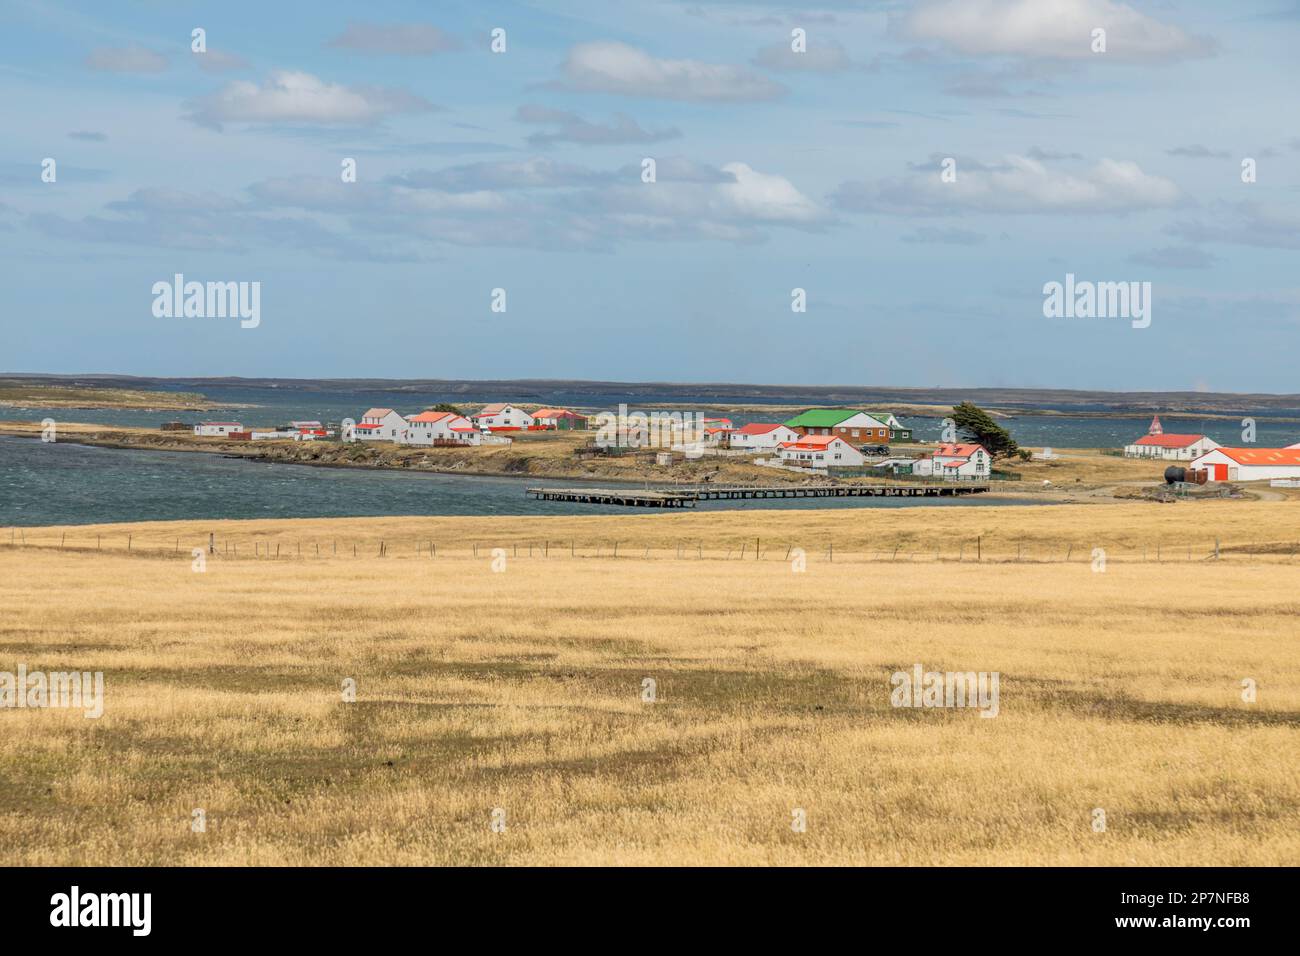 Il piccolo insediamento di Goose Green nelle Isole Falkland. Scena di battaglie durante la guerra delle Falklands del 1982. Foto Stock